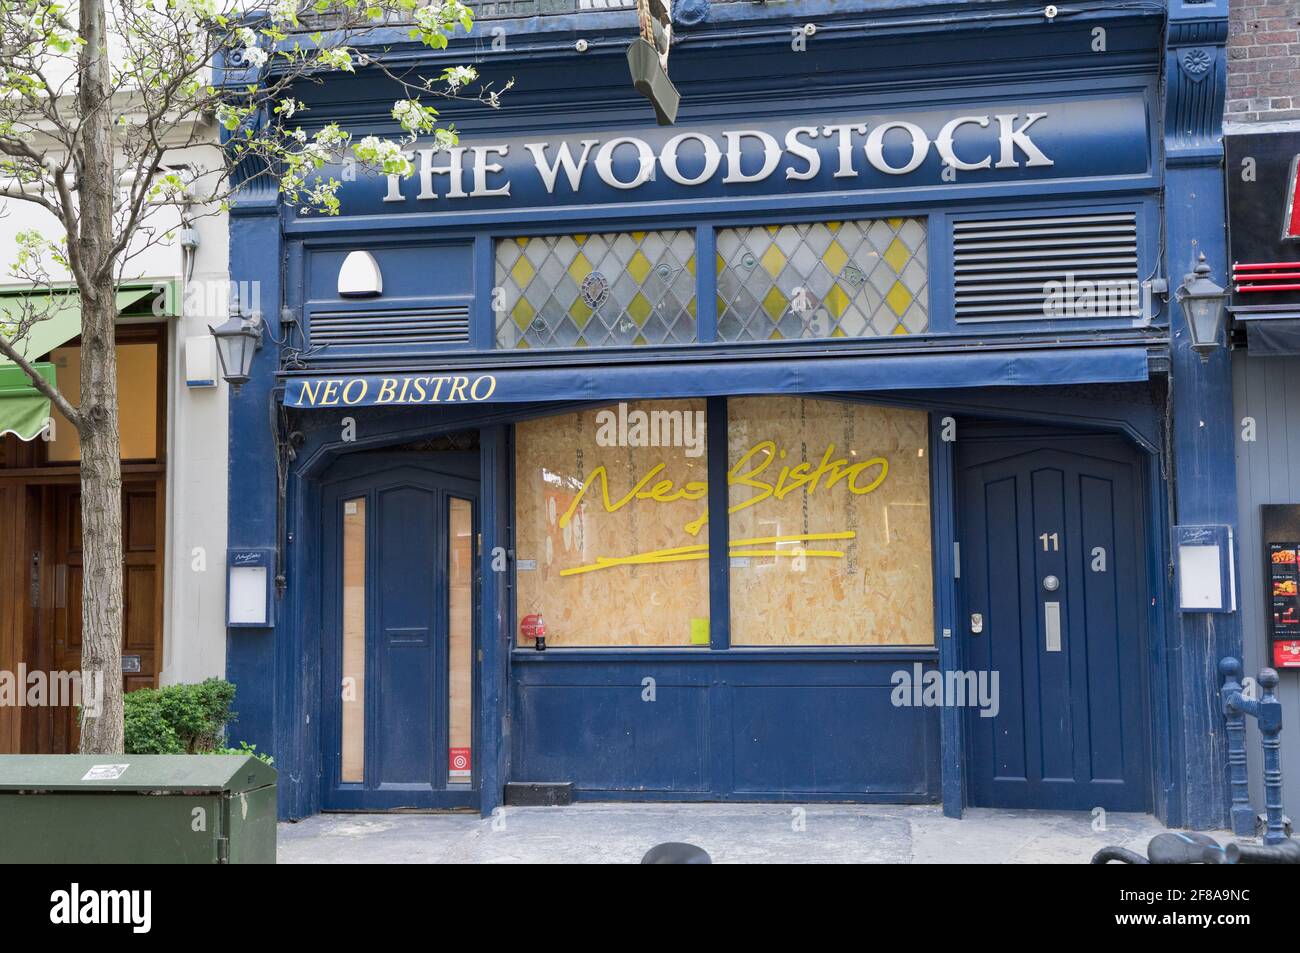 Fermeture et fermeture de woodstock, Londres Banque D'Images